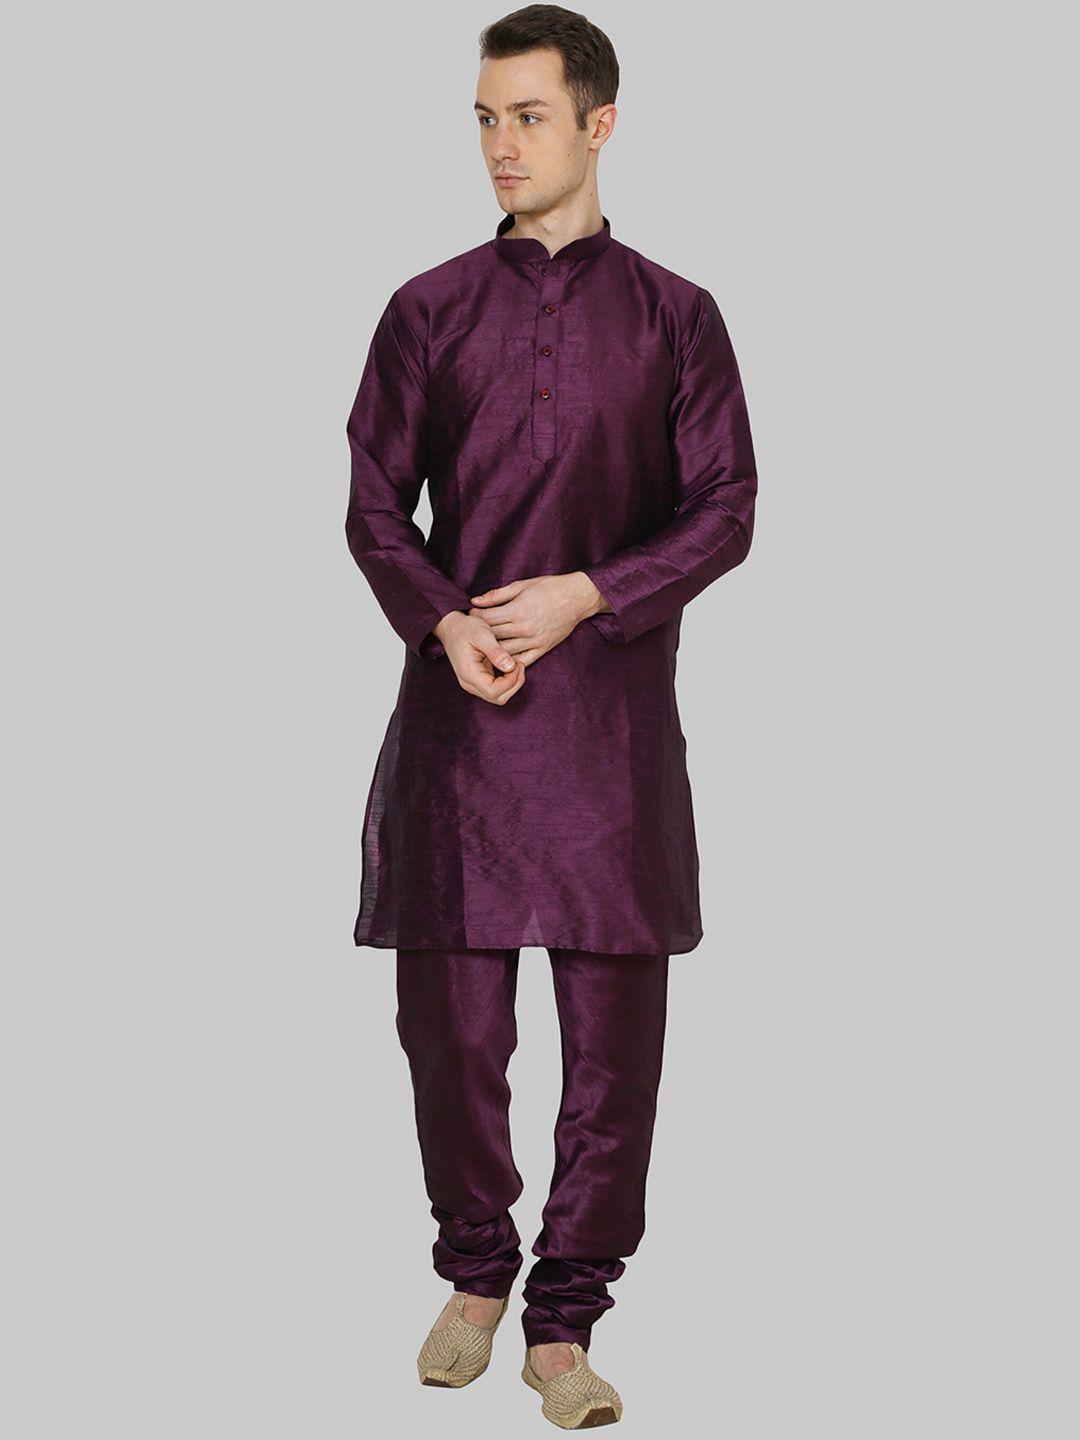 royal kurta men purple dupion silk kurta with pyjama